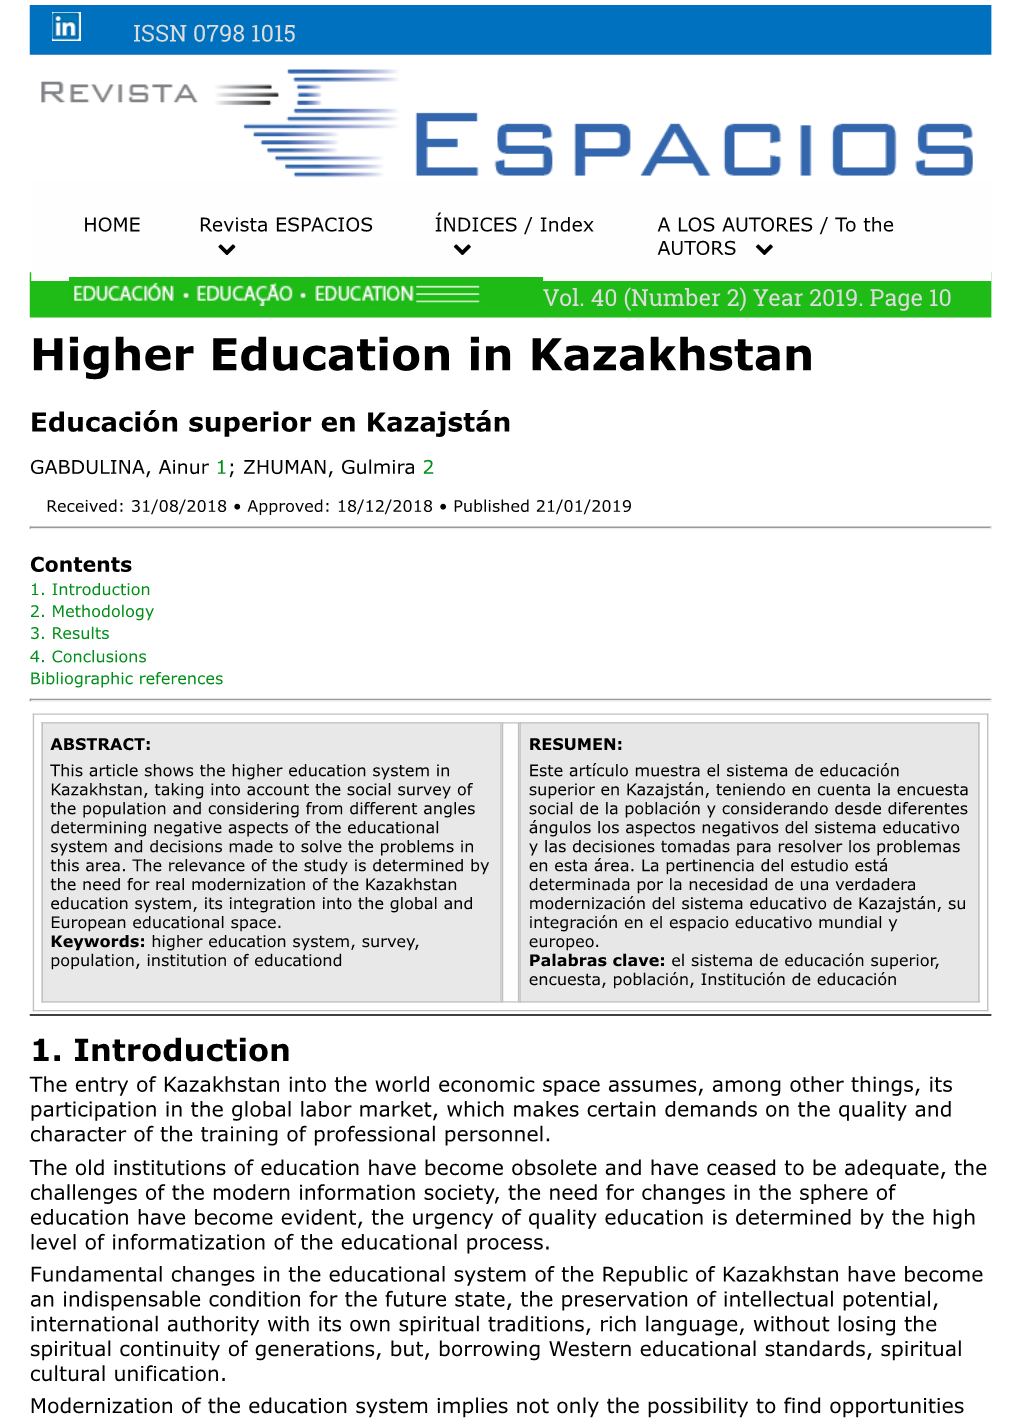 Higher Education in Kazakhstan